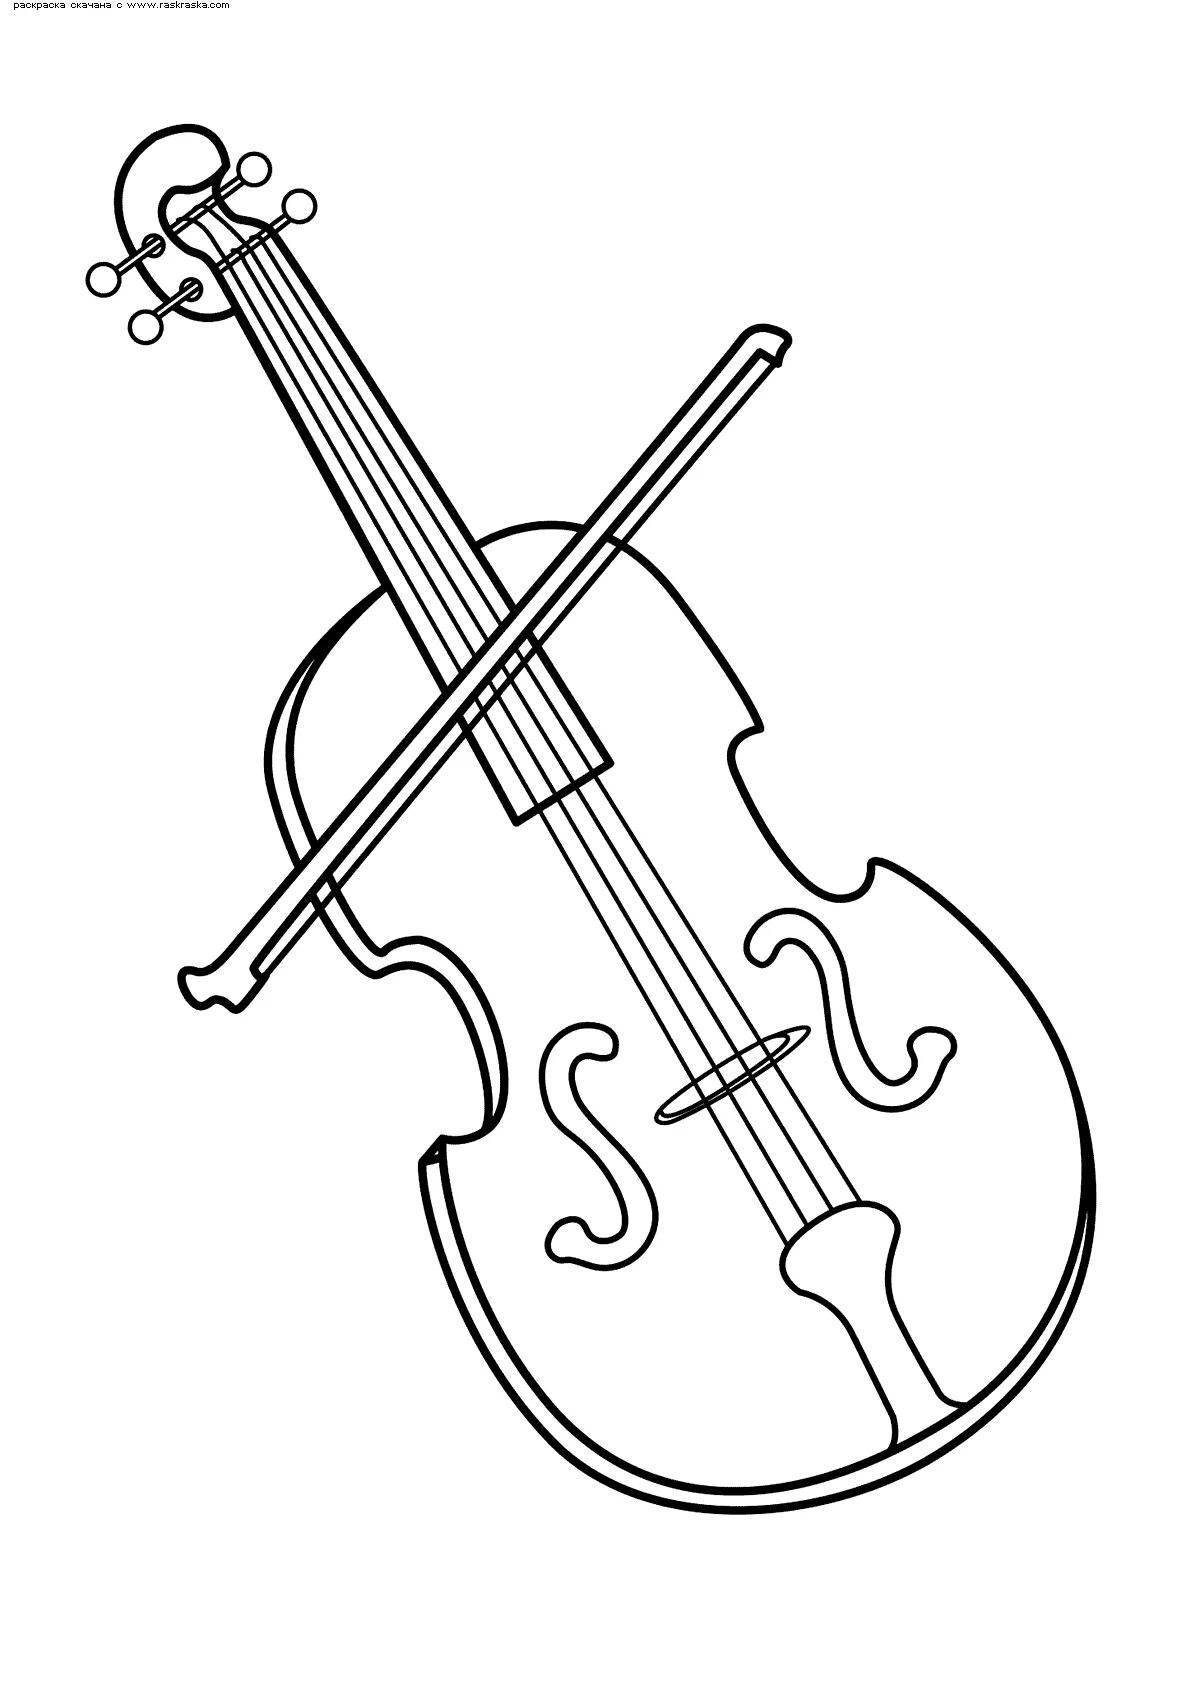 Coloring page calm violin and cello